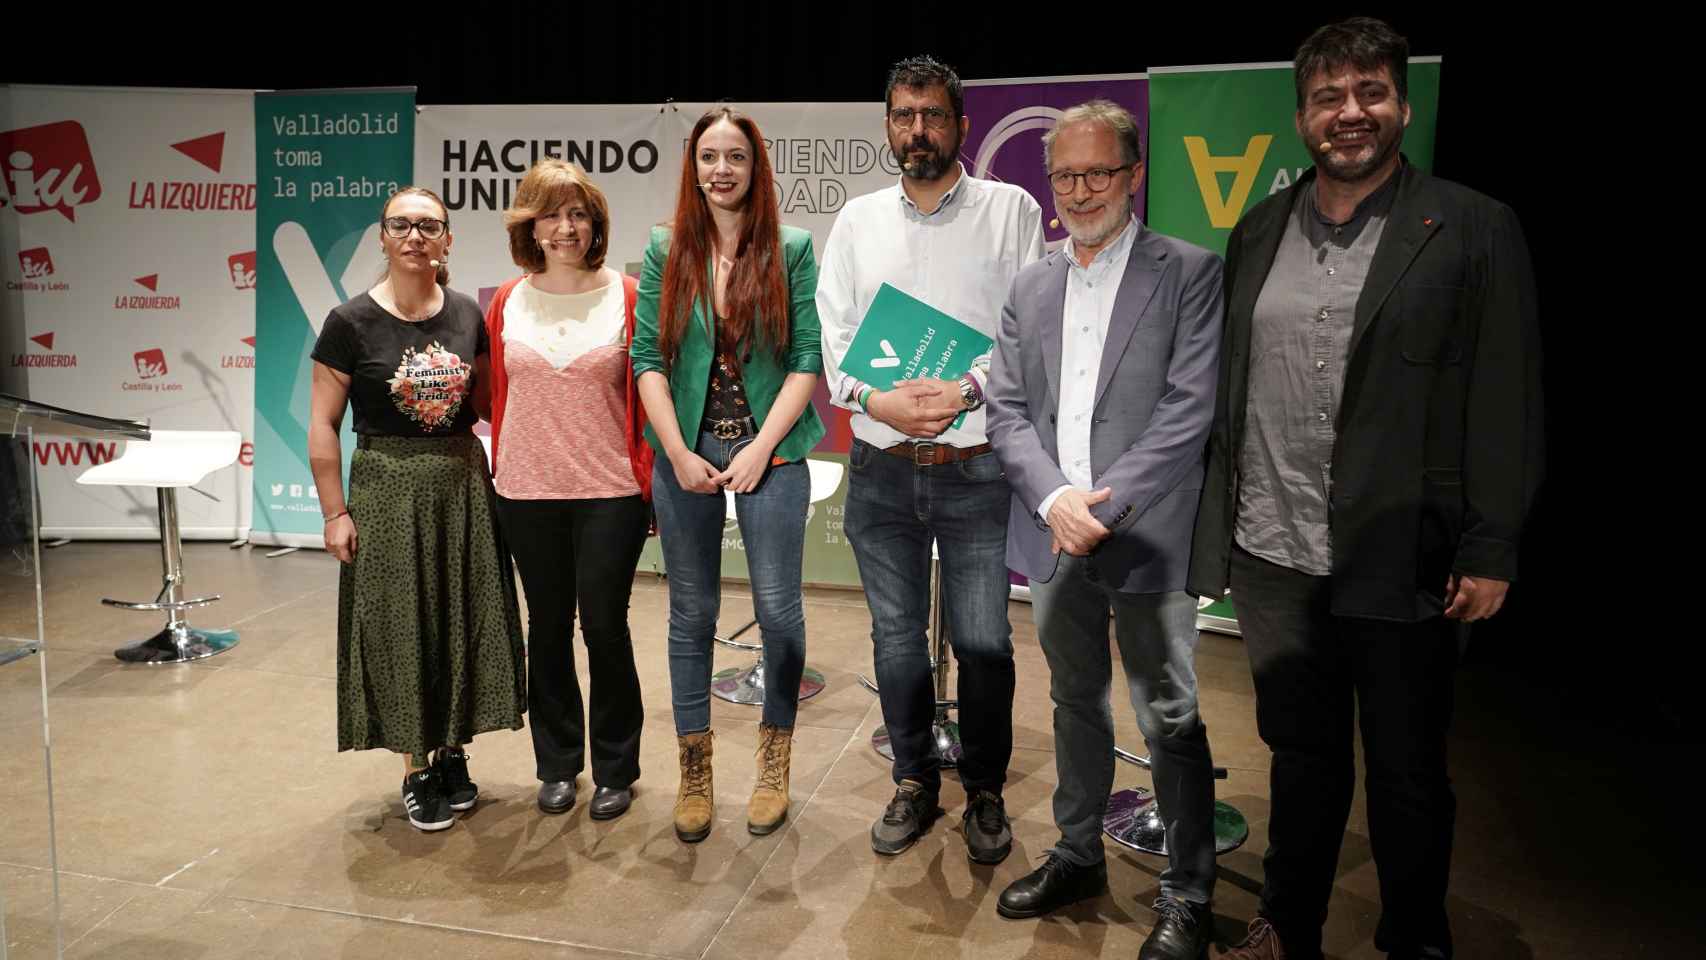 La reunión de la coalición de la izquierda progresista de Valladolid